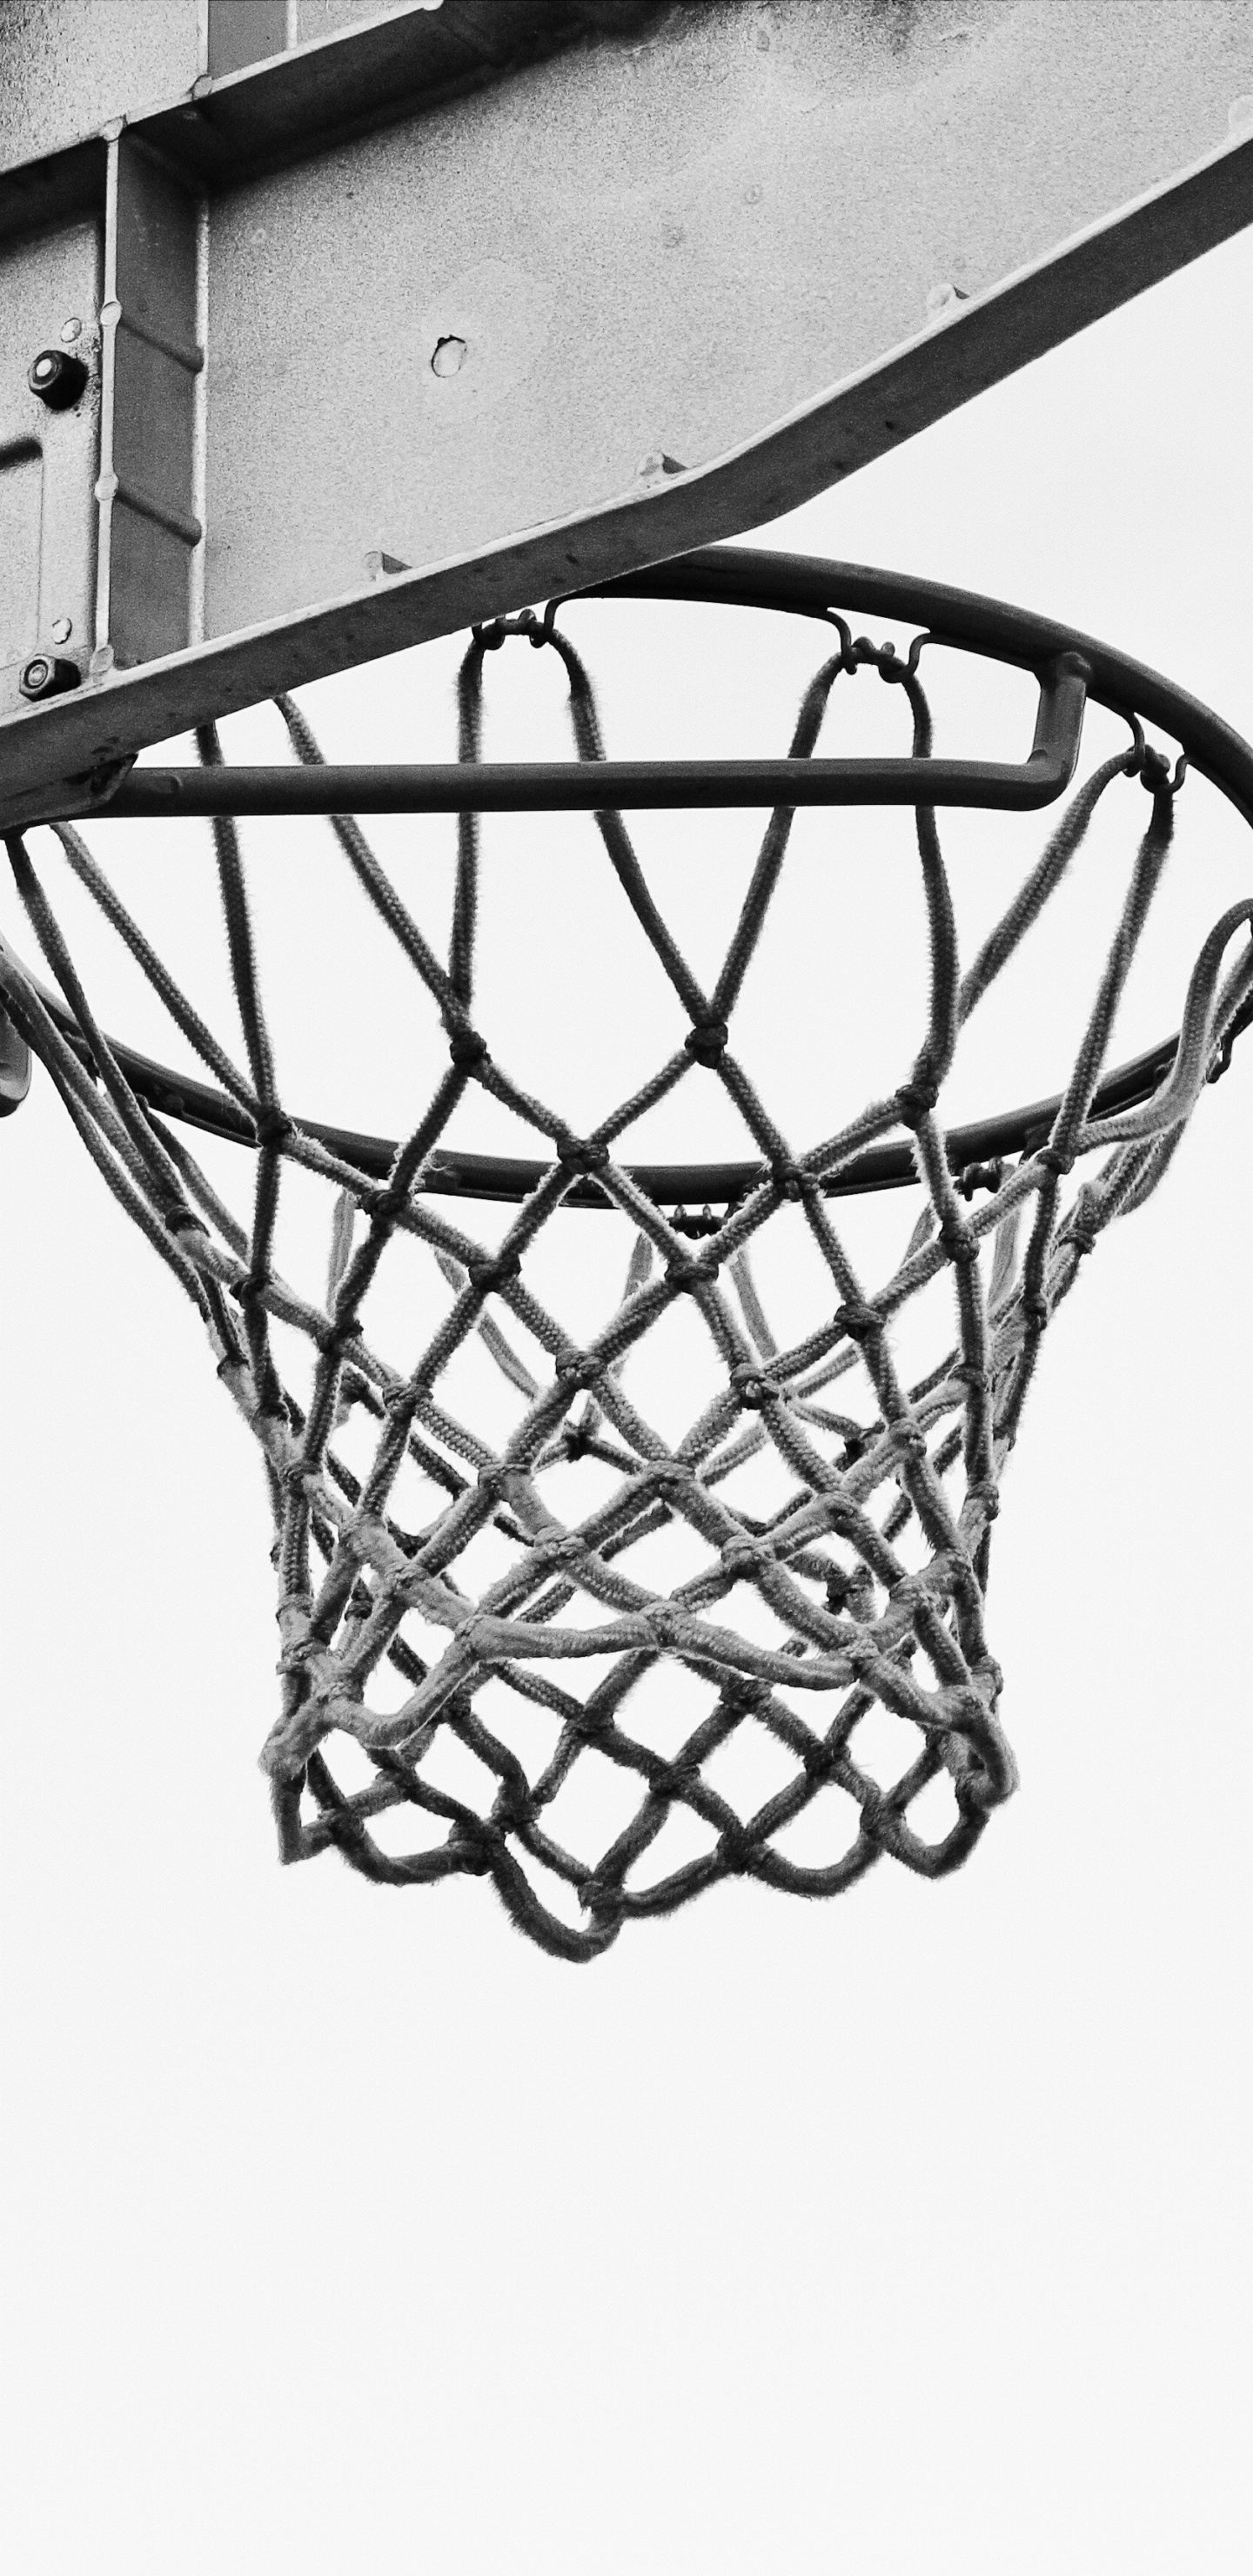 Basketball Auf Basketballkorb in Graustufenfotografie. Wallpaper in 1440x2960 Resolution